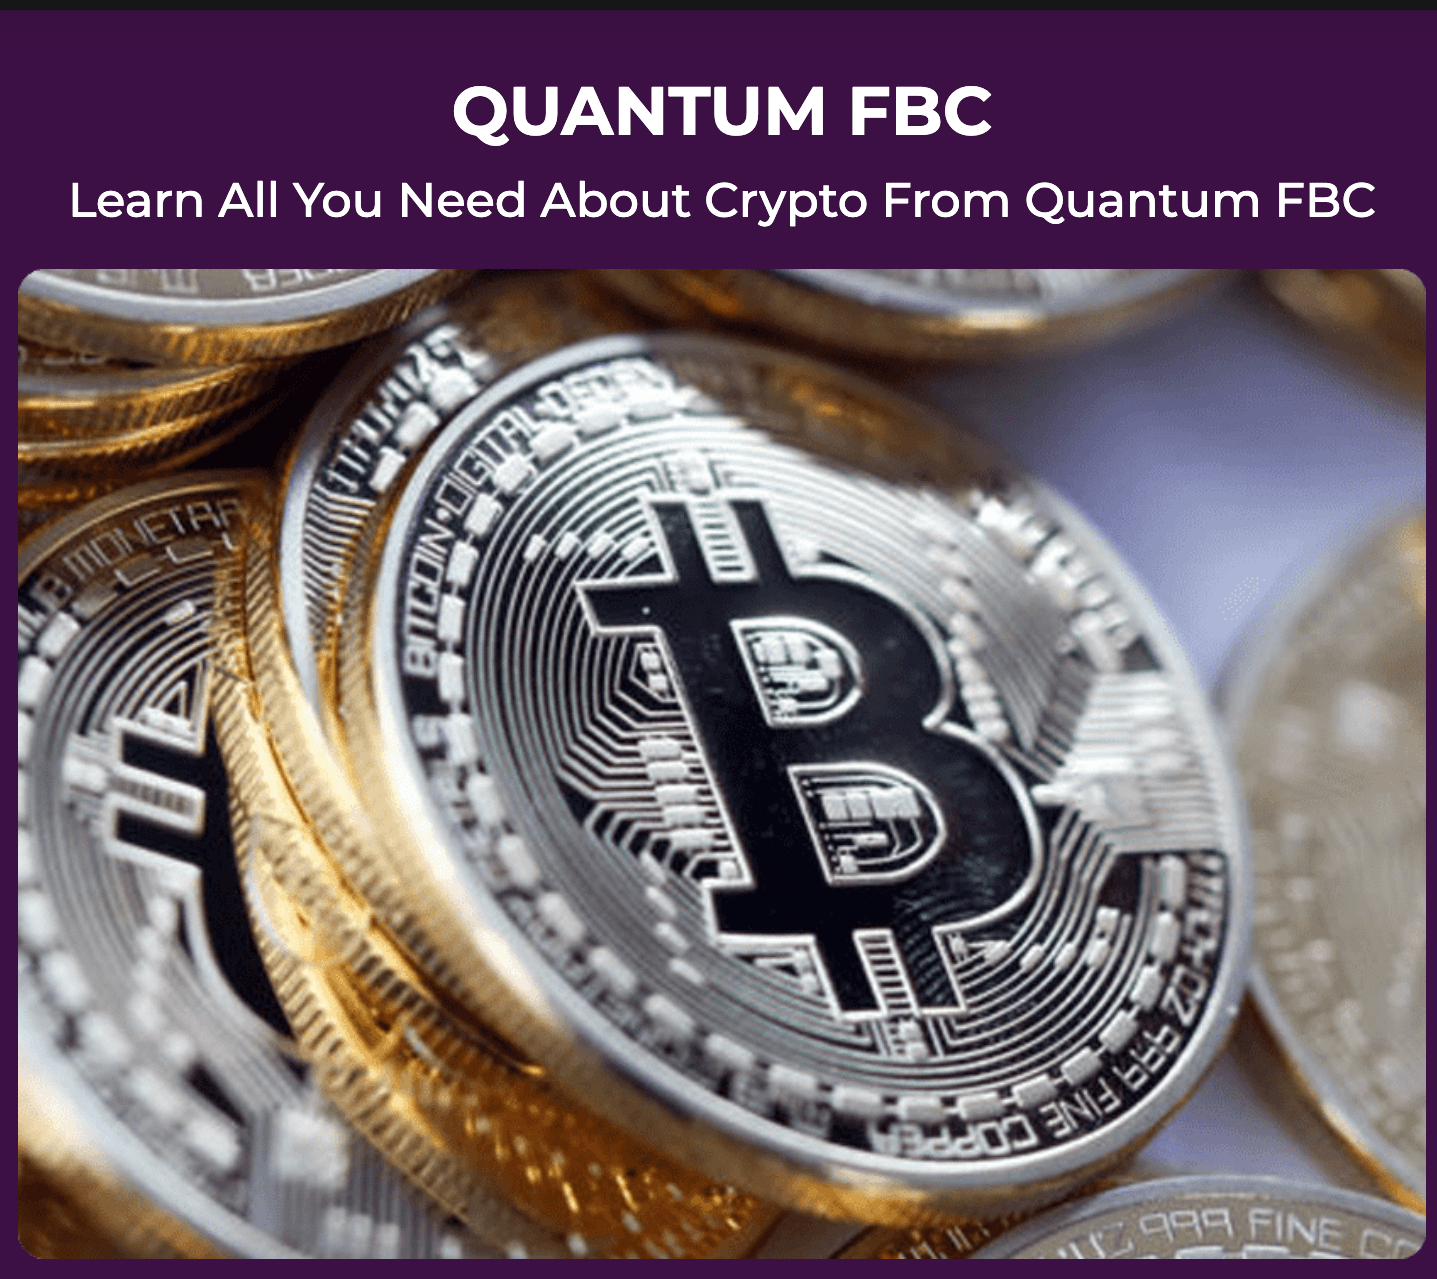 Quantum FBC Review - Scam or Legitimate Crypto Trading Platform